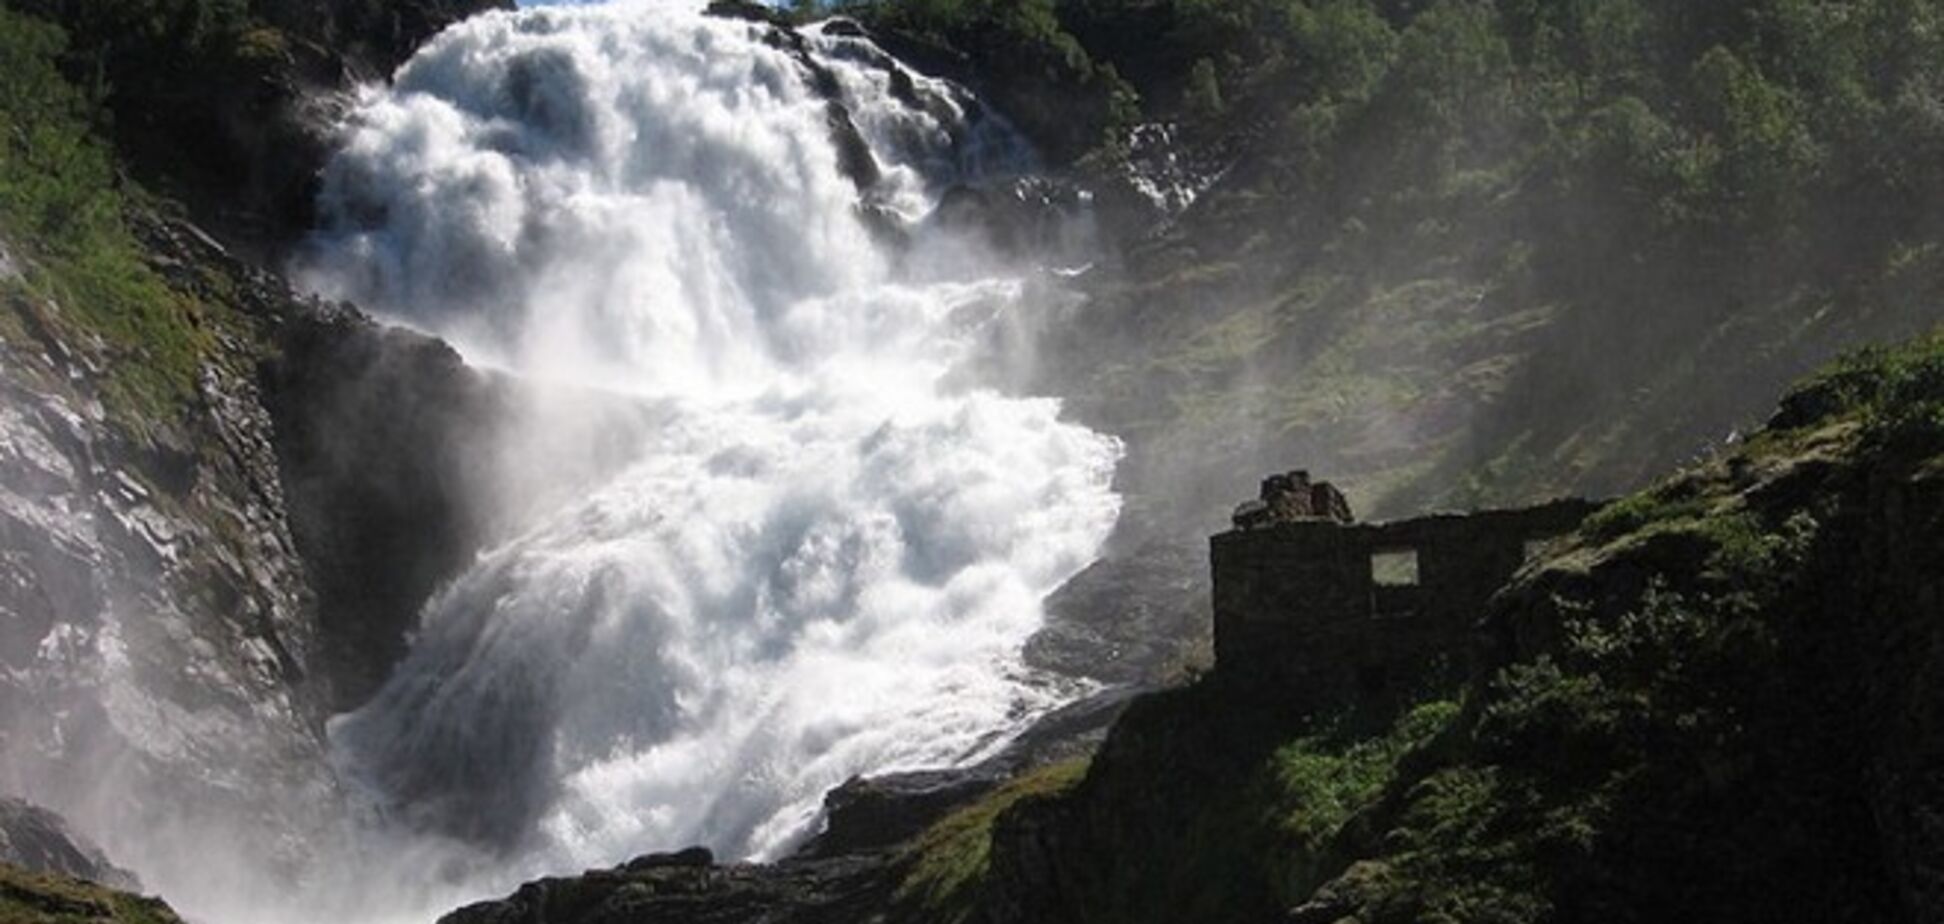 Захватывает дух! Водопады чудес 'прячутся' по всему миру